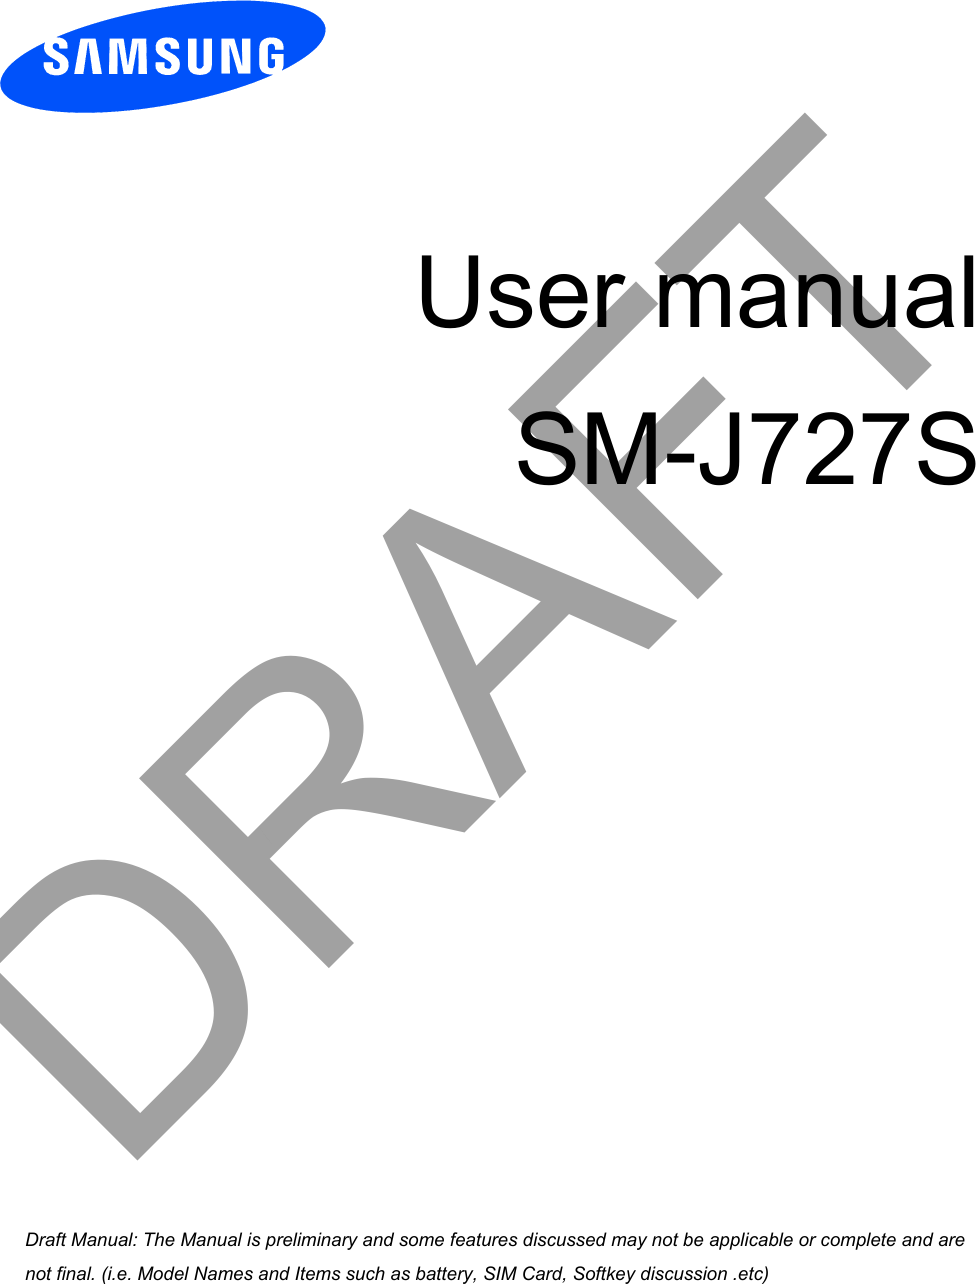 User manual SM-J727SDRAFTa ana  ana  na and  a dd a n  aa   and a n na  d a and   a a  ad  dn 